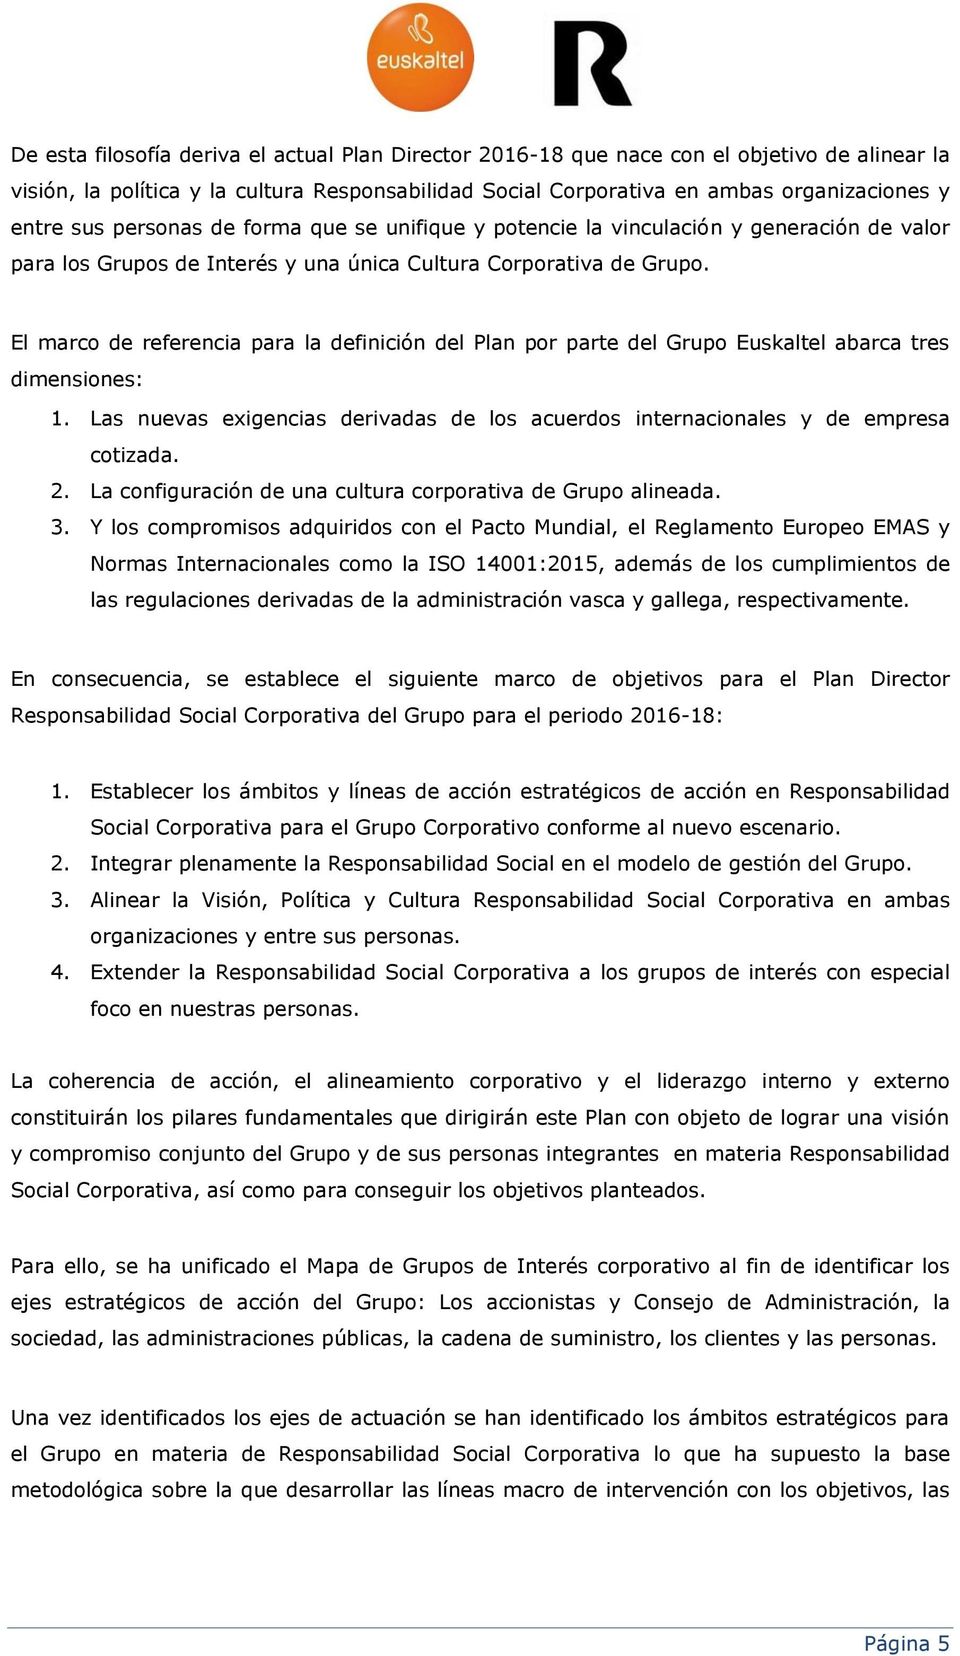 El marco de referencia para la definición del Plan por parte del Grupo Euskaltel abarca tres dimensiones: 1. Las nuevas exigencias derivadas de los acuerdos internacionales y de empresa cotizada. 2.